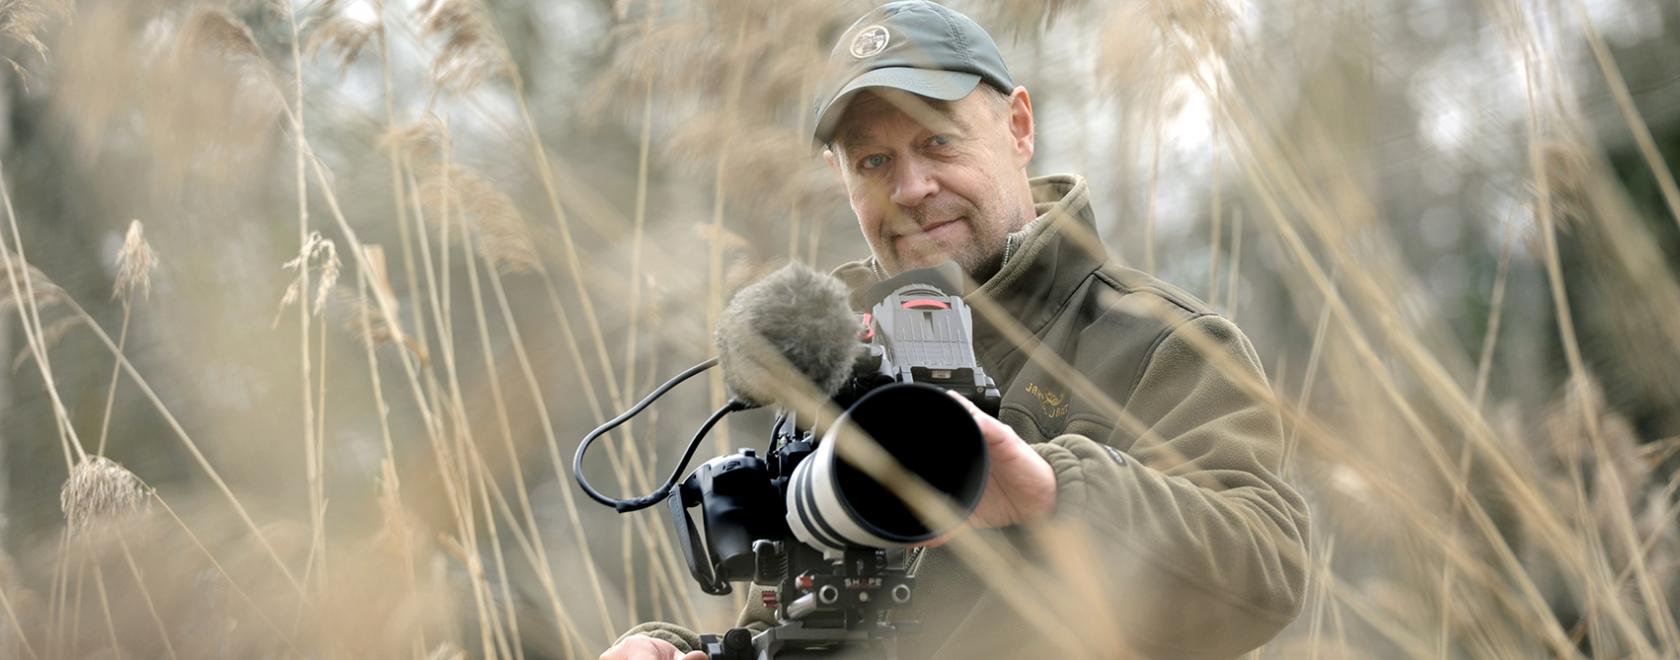 Dokumenttielokuvaohjaaja Jouni Hiltunen sai Kymenlaakson rahaston apurahan 2020 Kurjenpojan pitkä matka -luontoelokuvan valmistamiseen. Kuva: Johannes Wiehn